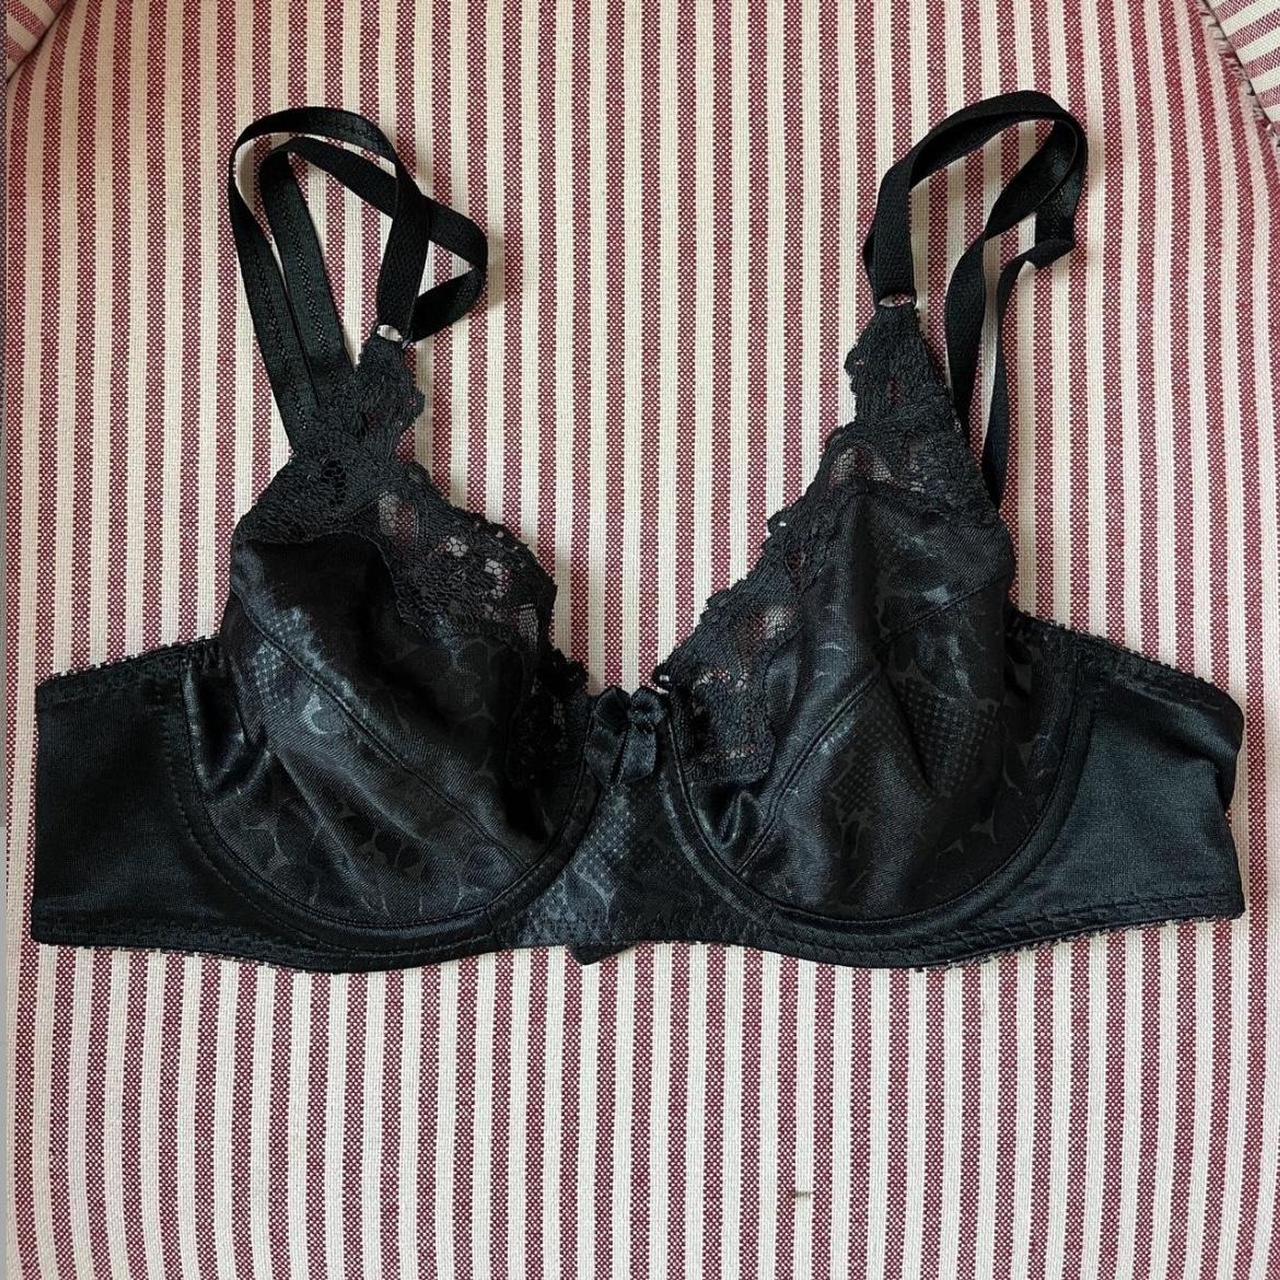 Repop black silky bra 34C Very comfortable on skin - Depop